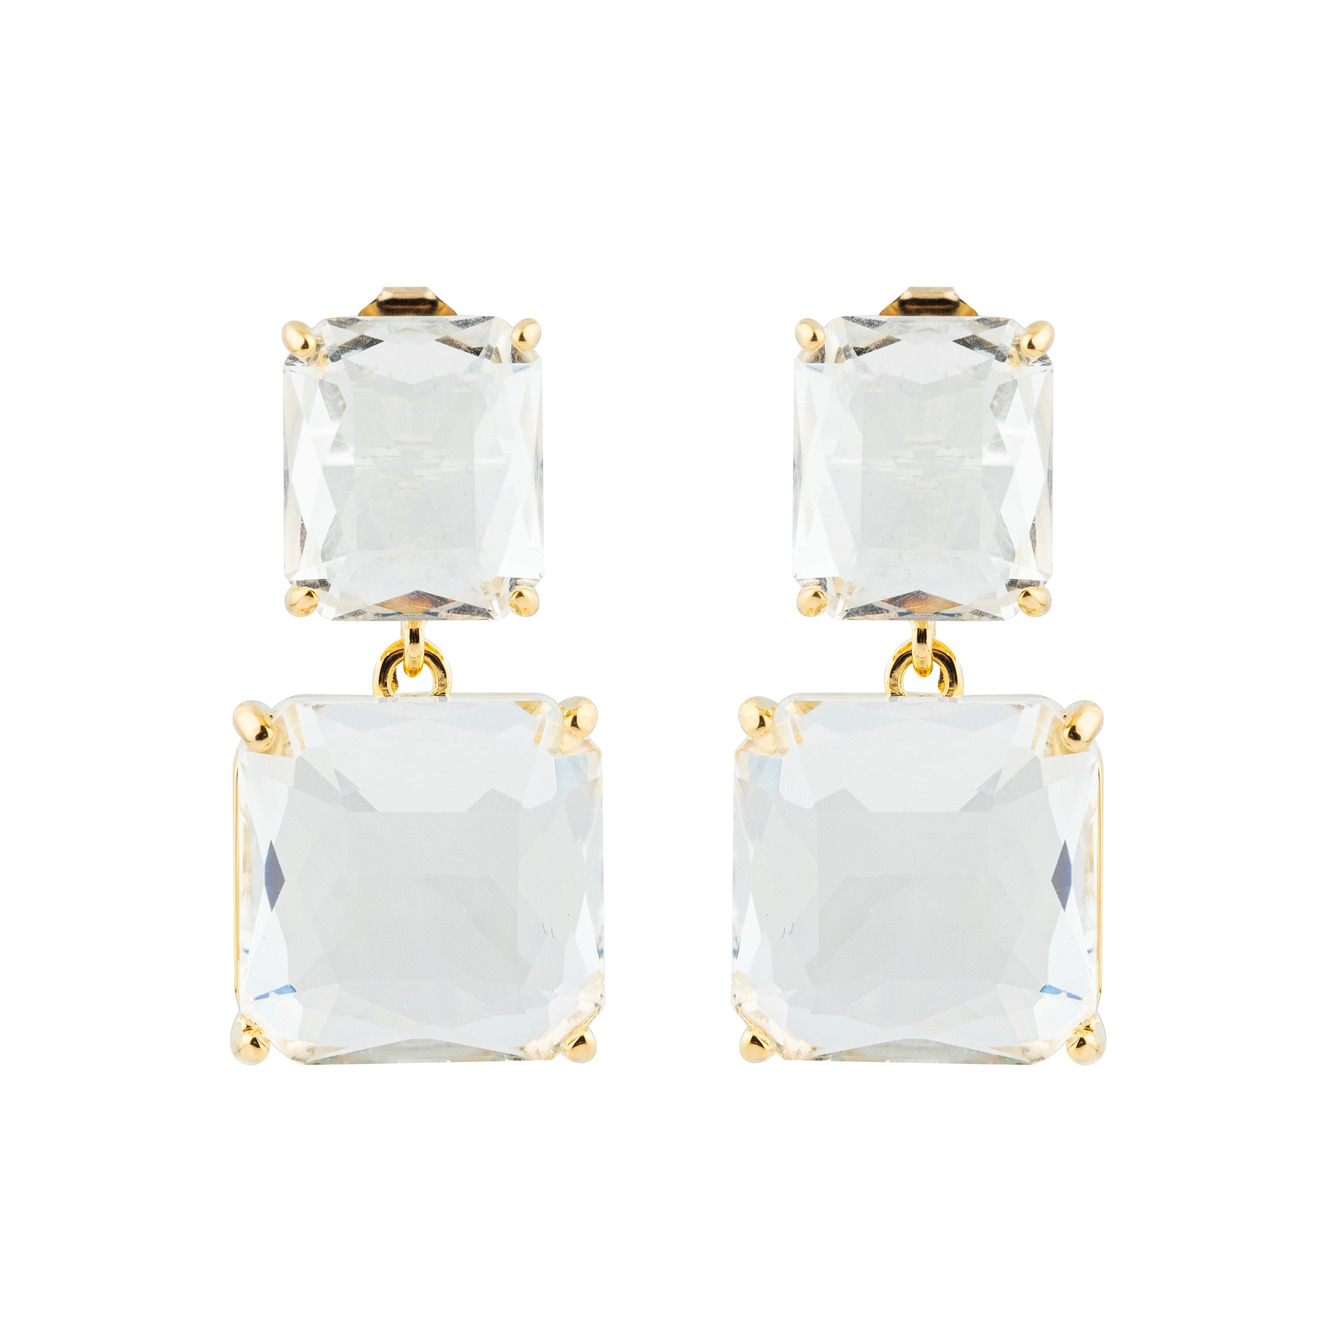 herald percy золотистые дутые серьги кольца с овальными кристаллами Herald Percy Двойные золотистые серьги с белыми кристаллами